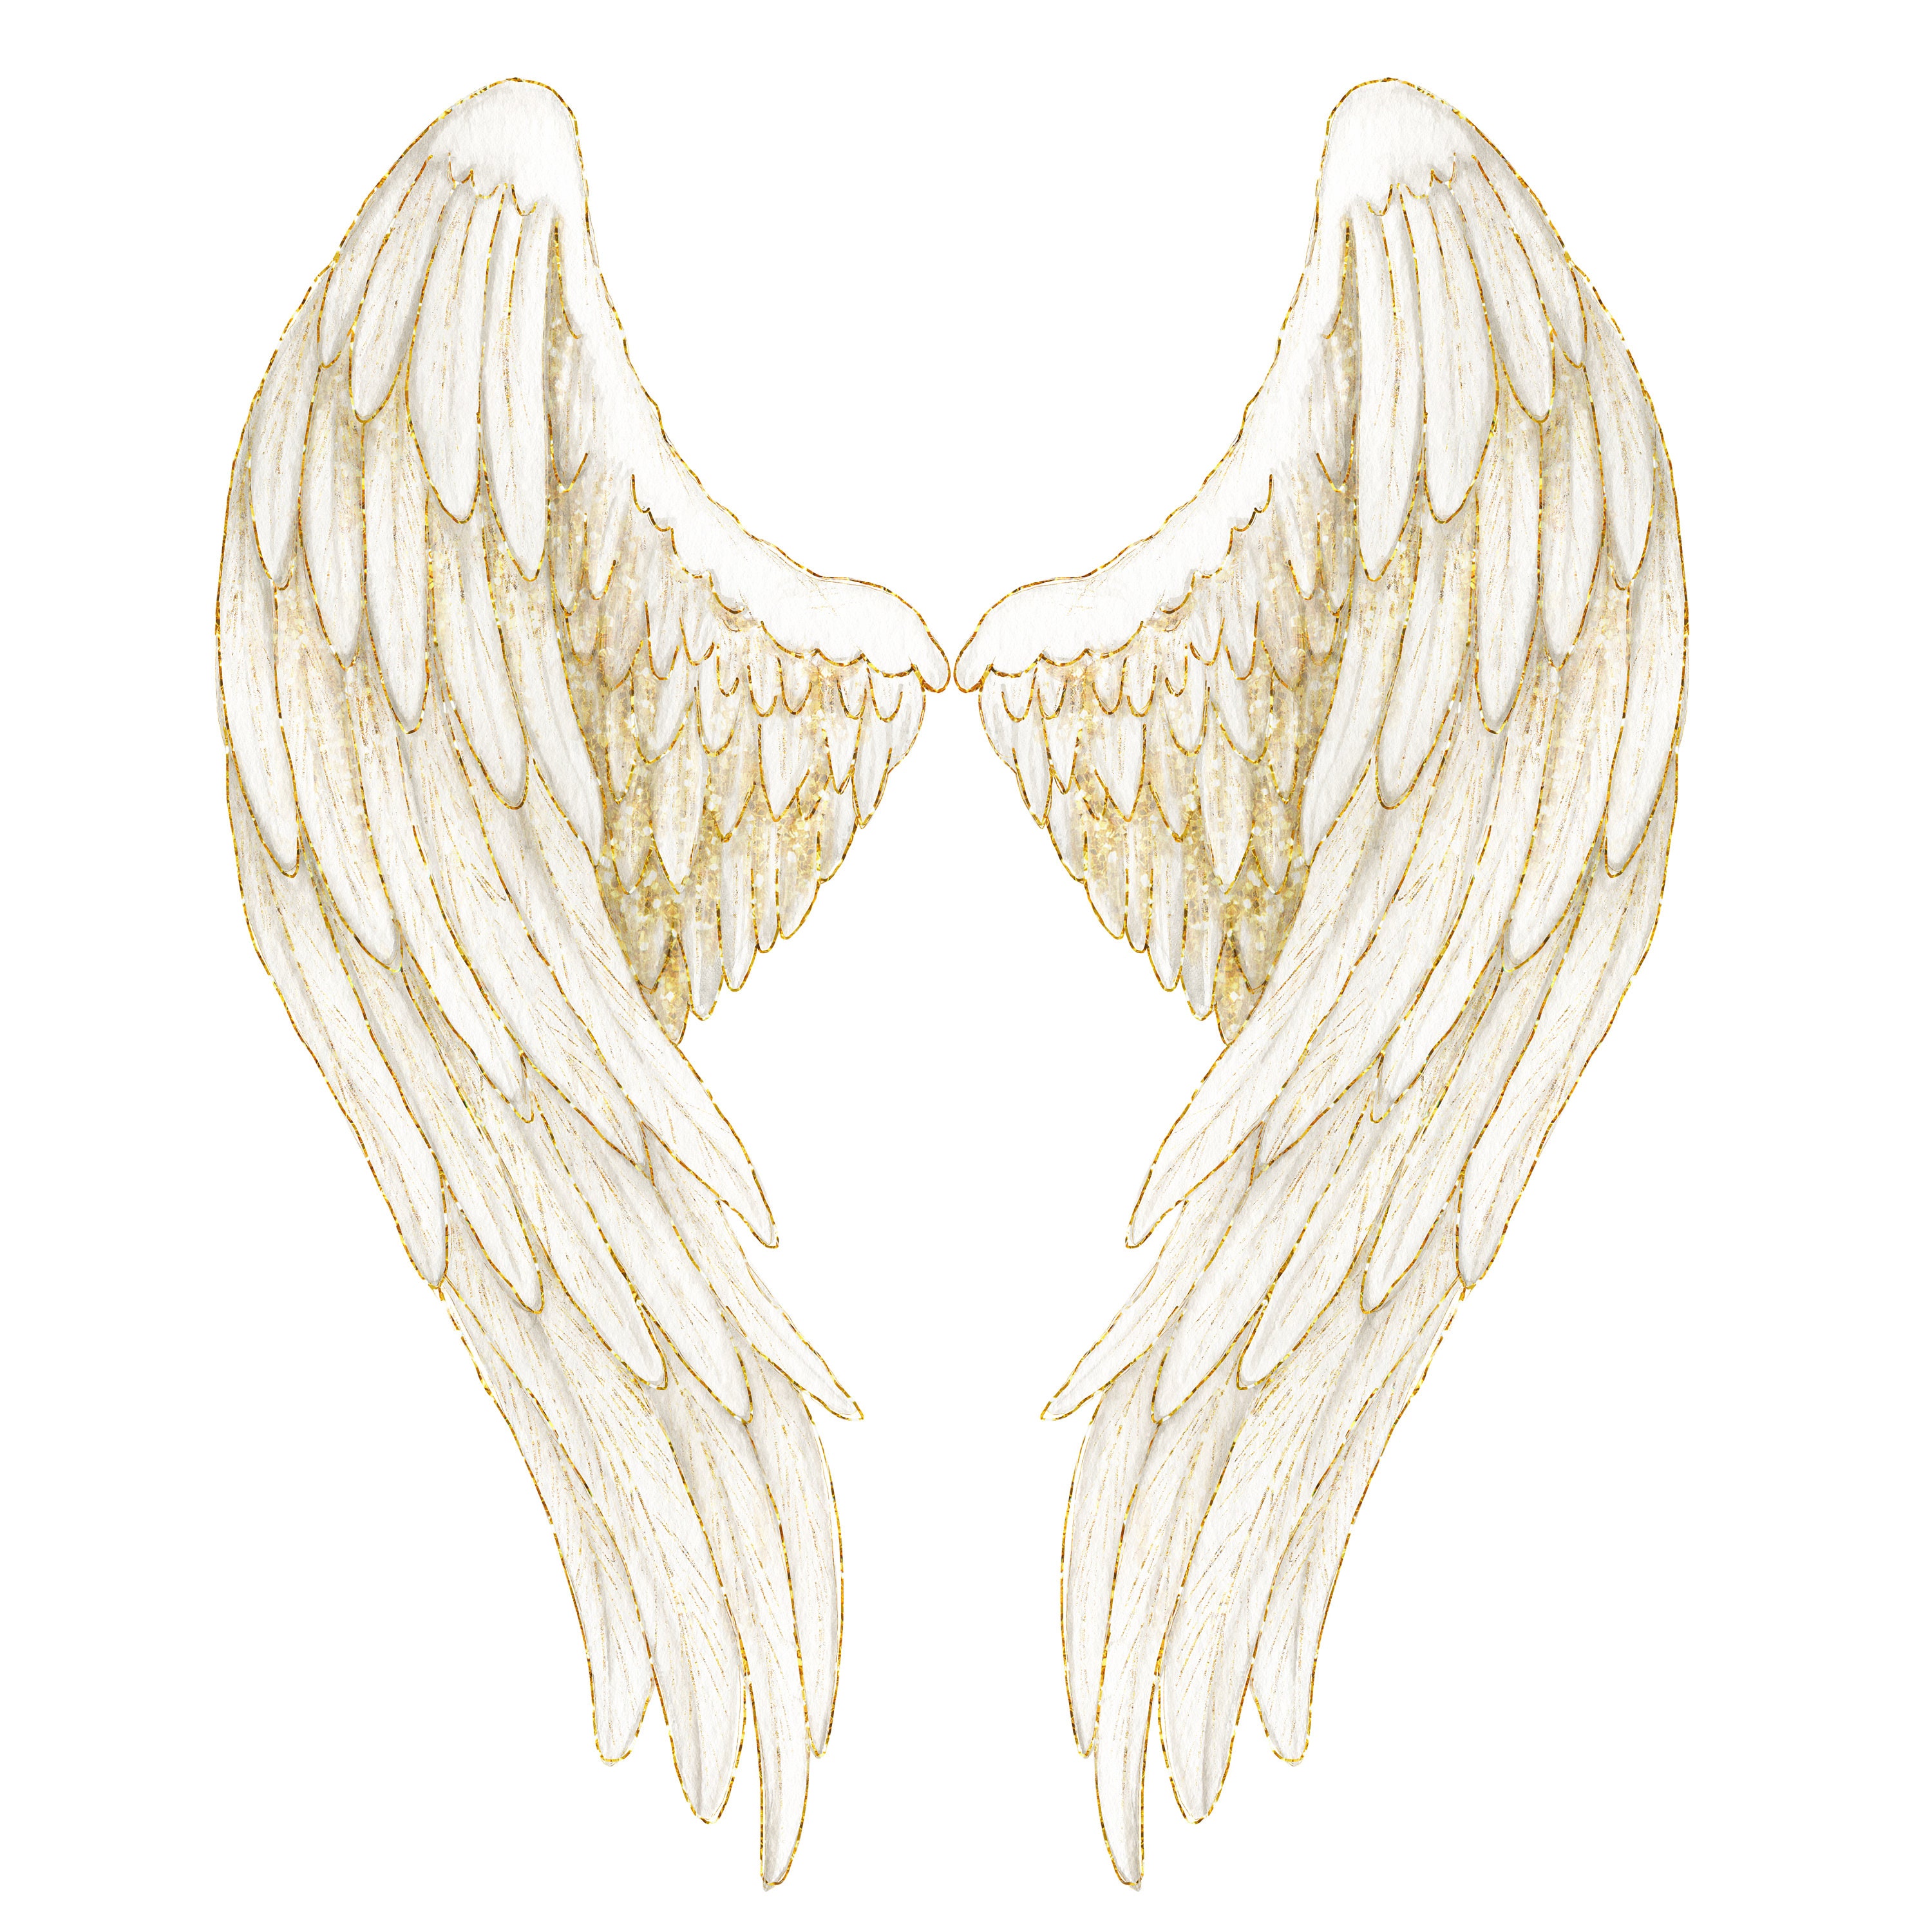 Gold Angel Wings Memorial PNG Watercolor